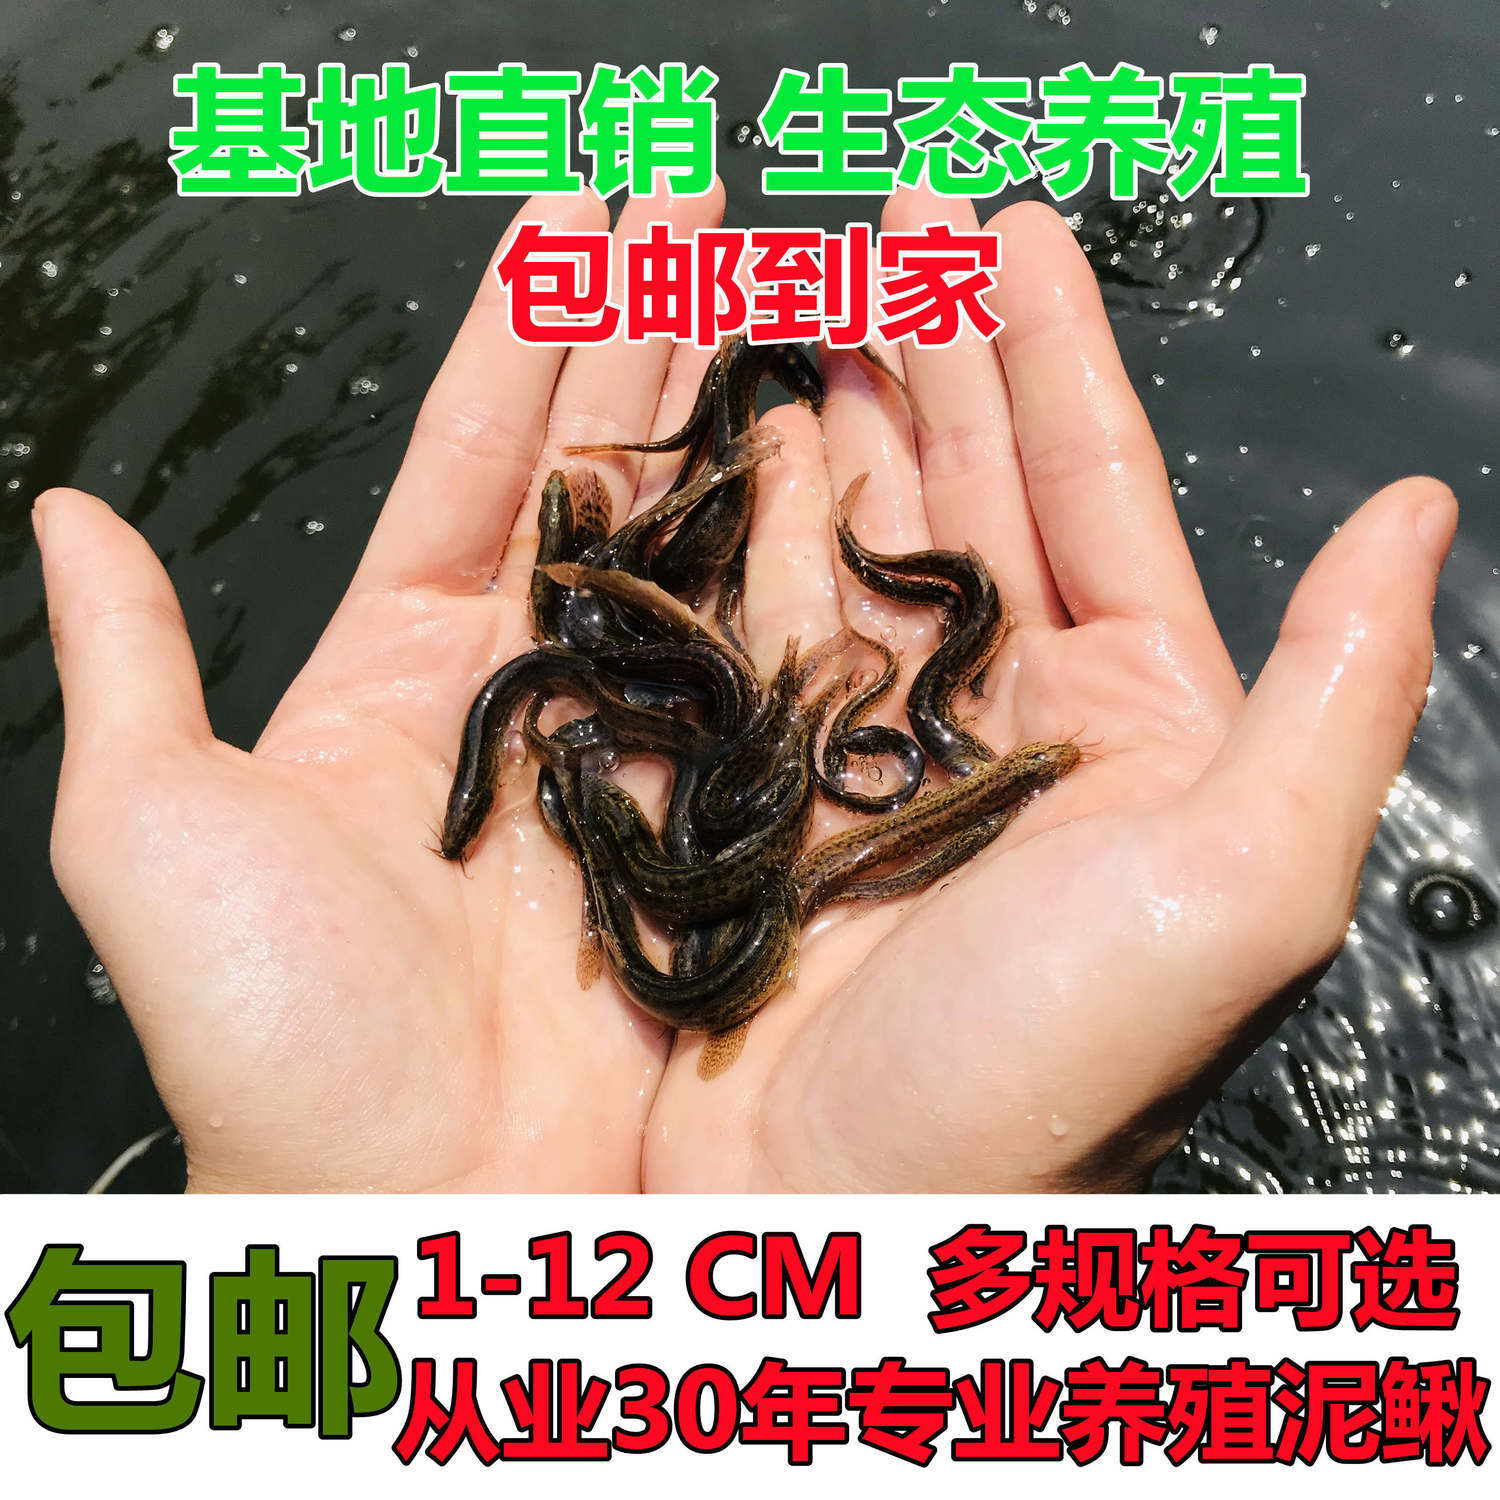 台湾泥鳅钓鱼苗本地青鳅金鳅鲜活筏钓鱼养殖淡水乌龟龙鱼宠物饲料